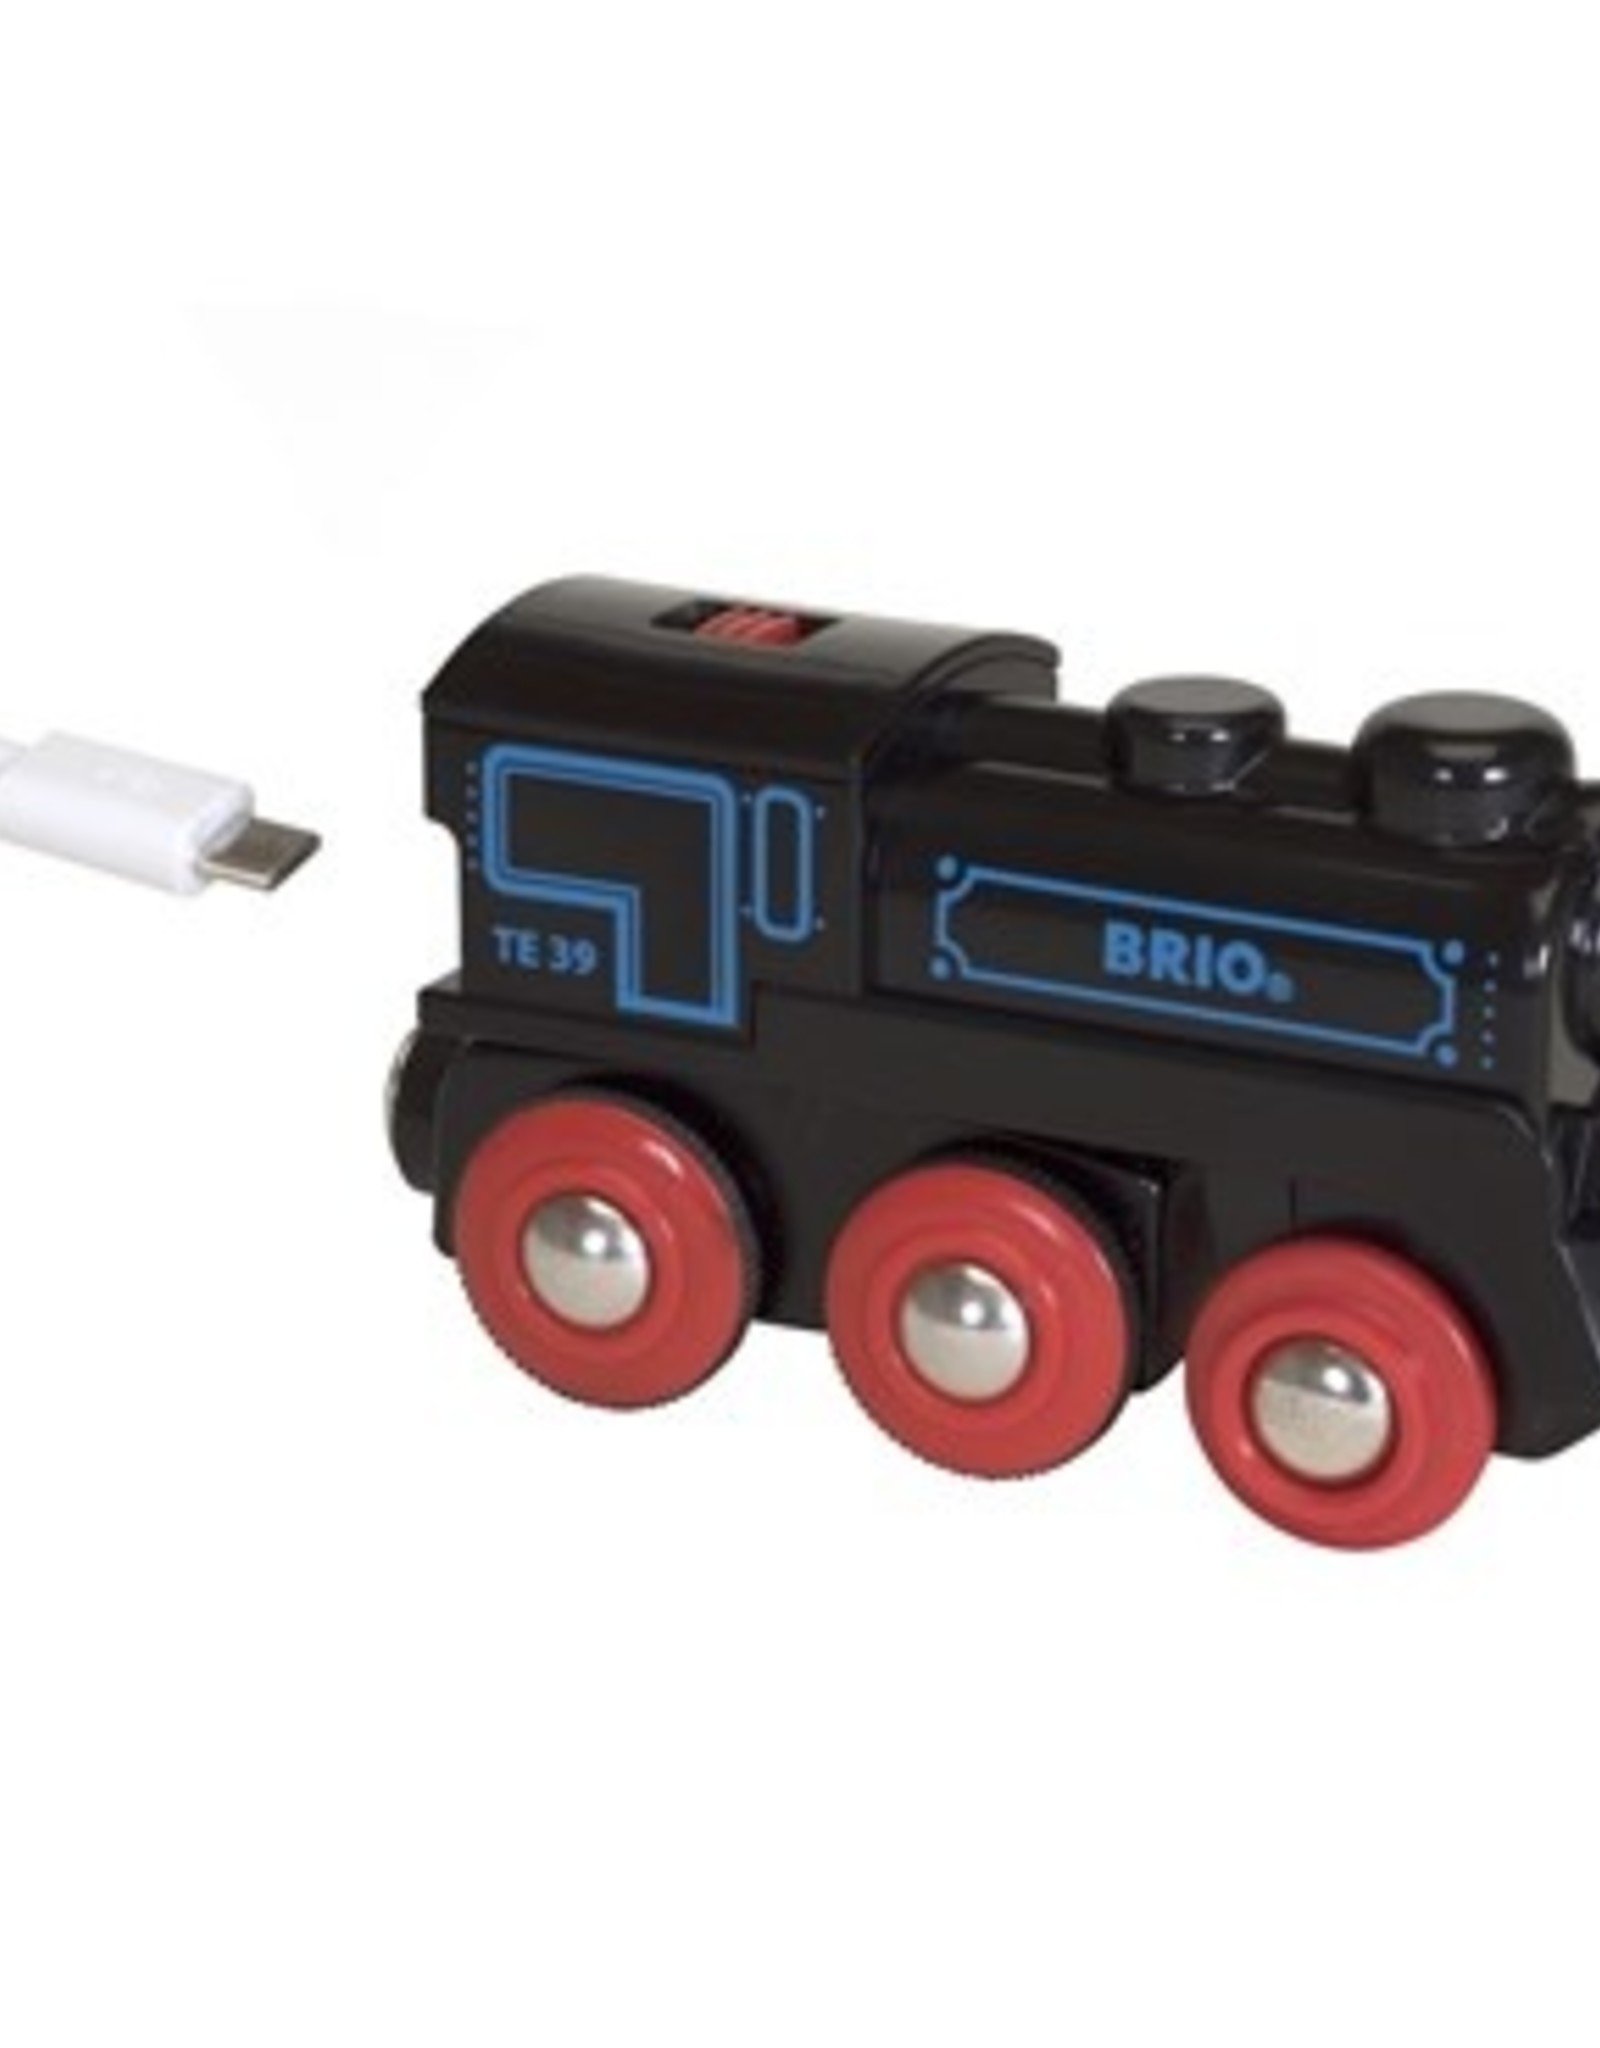 Brio Oplaadbare Locomotief met mini USB-kabel